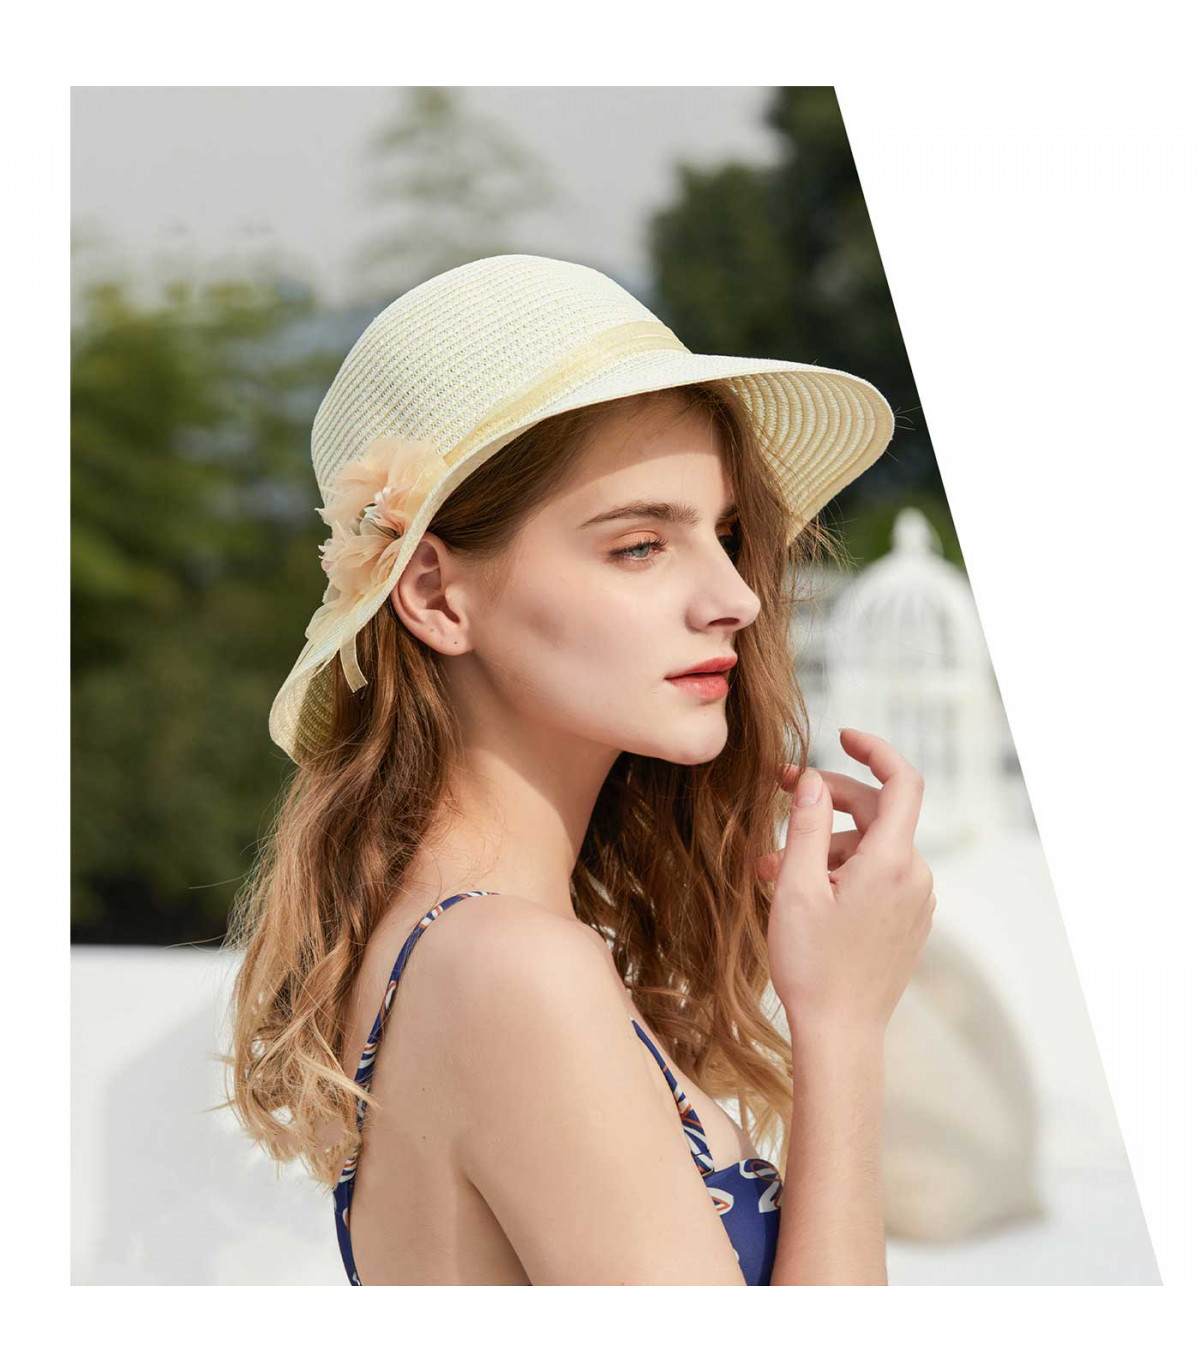 Tradineur - Sombrero de mujer con flor, paja flexible, ala ancha y